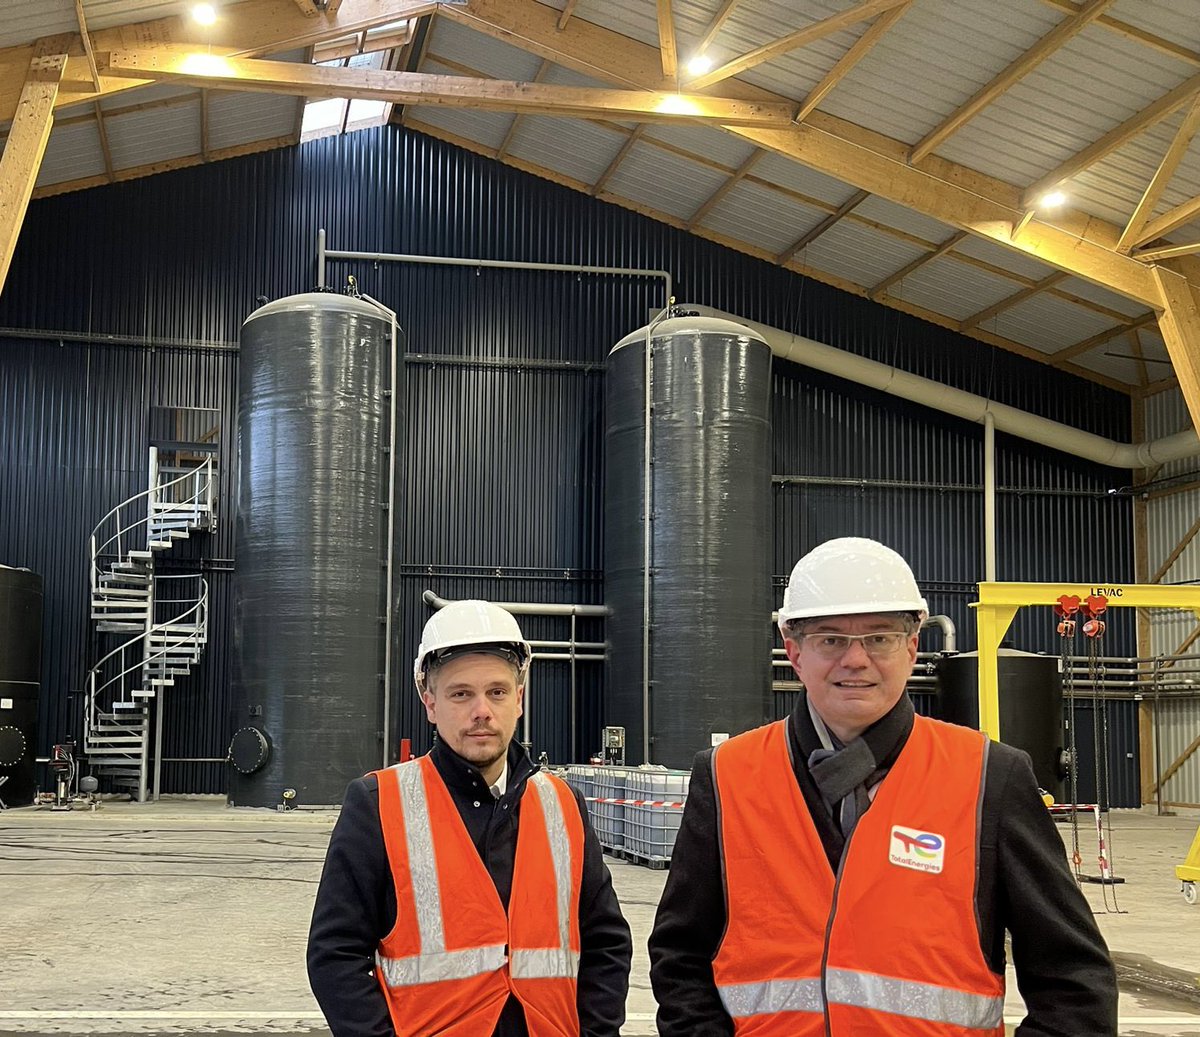 Nous étions ce matin avec @Cresson_Ni sur le site de la plus grosse usine de méthanisation de France à #Mourenx. Visite très intéressante et instructive sur la production de biogaz.